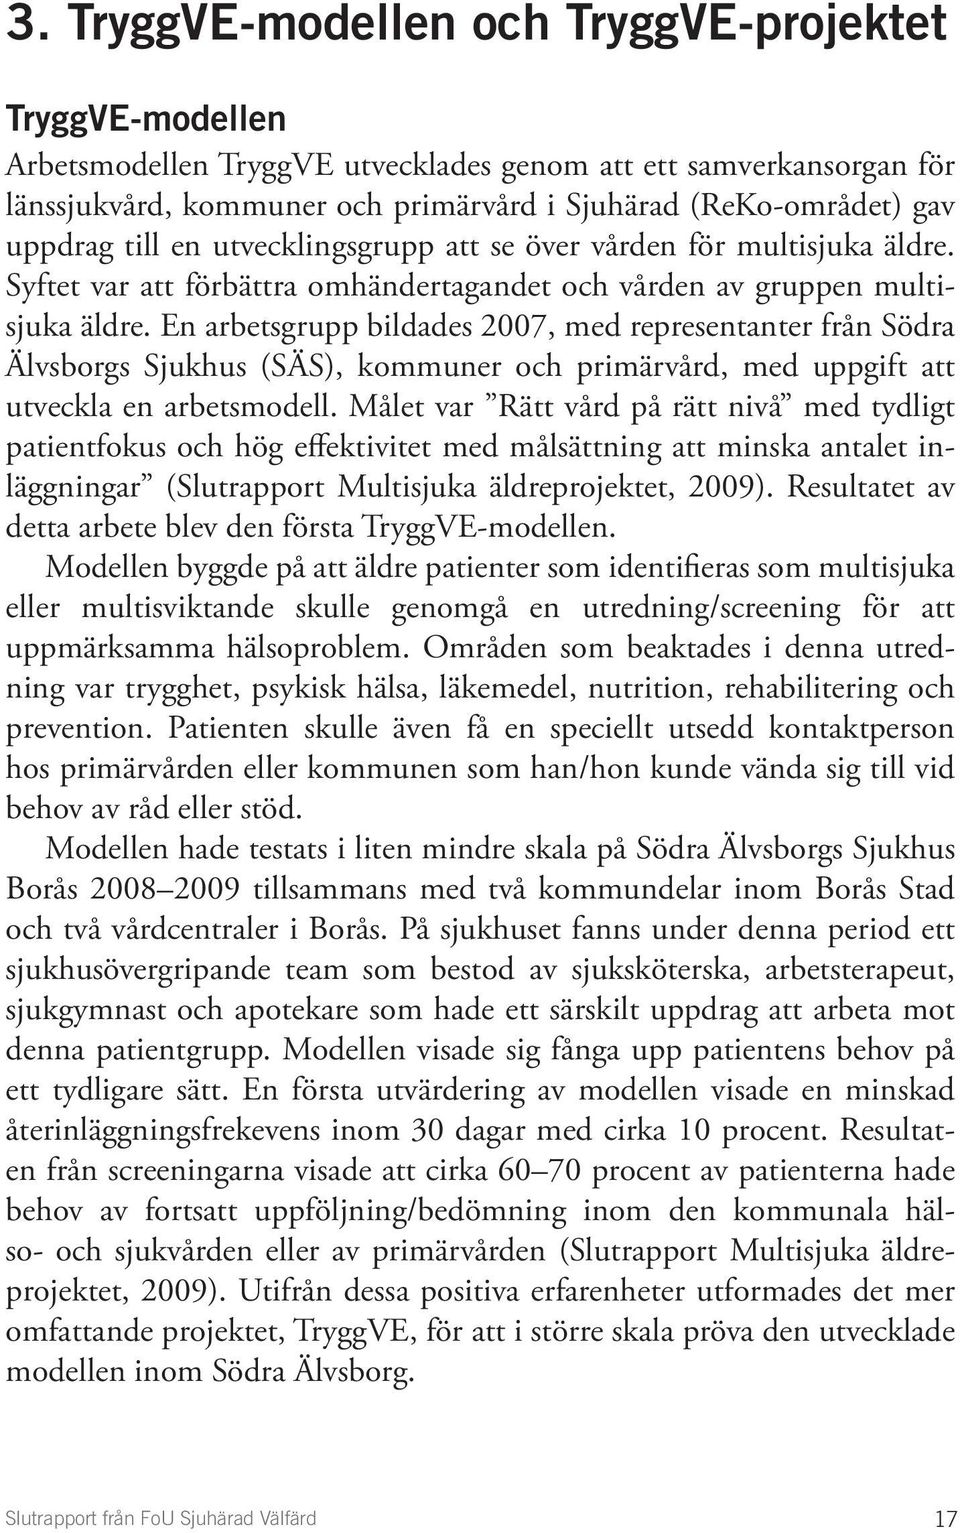 En arbetsgrupp bildades 2007, med representanter från Södra Älvsborgs Sjukhus (SÄS), kommuner och primärvård, med uppgift att utveckla en arbetsmodell.